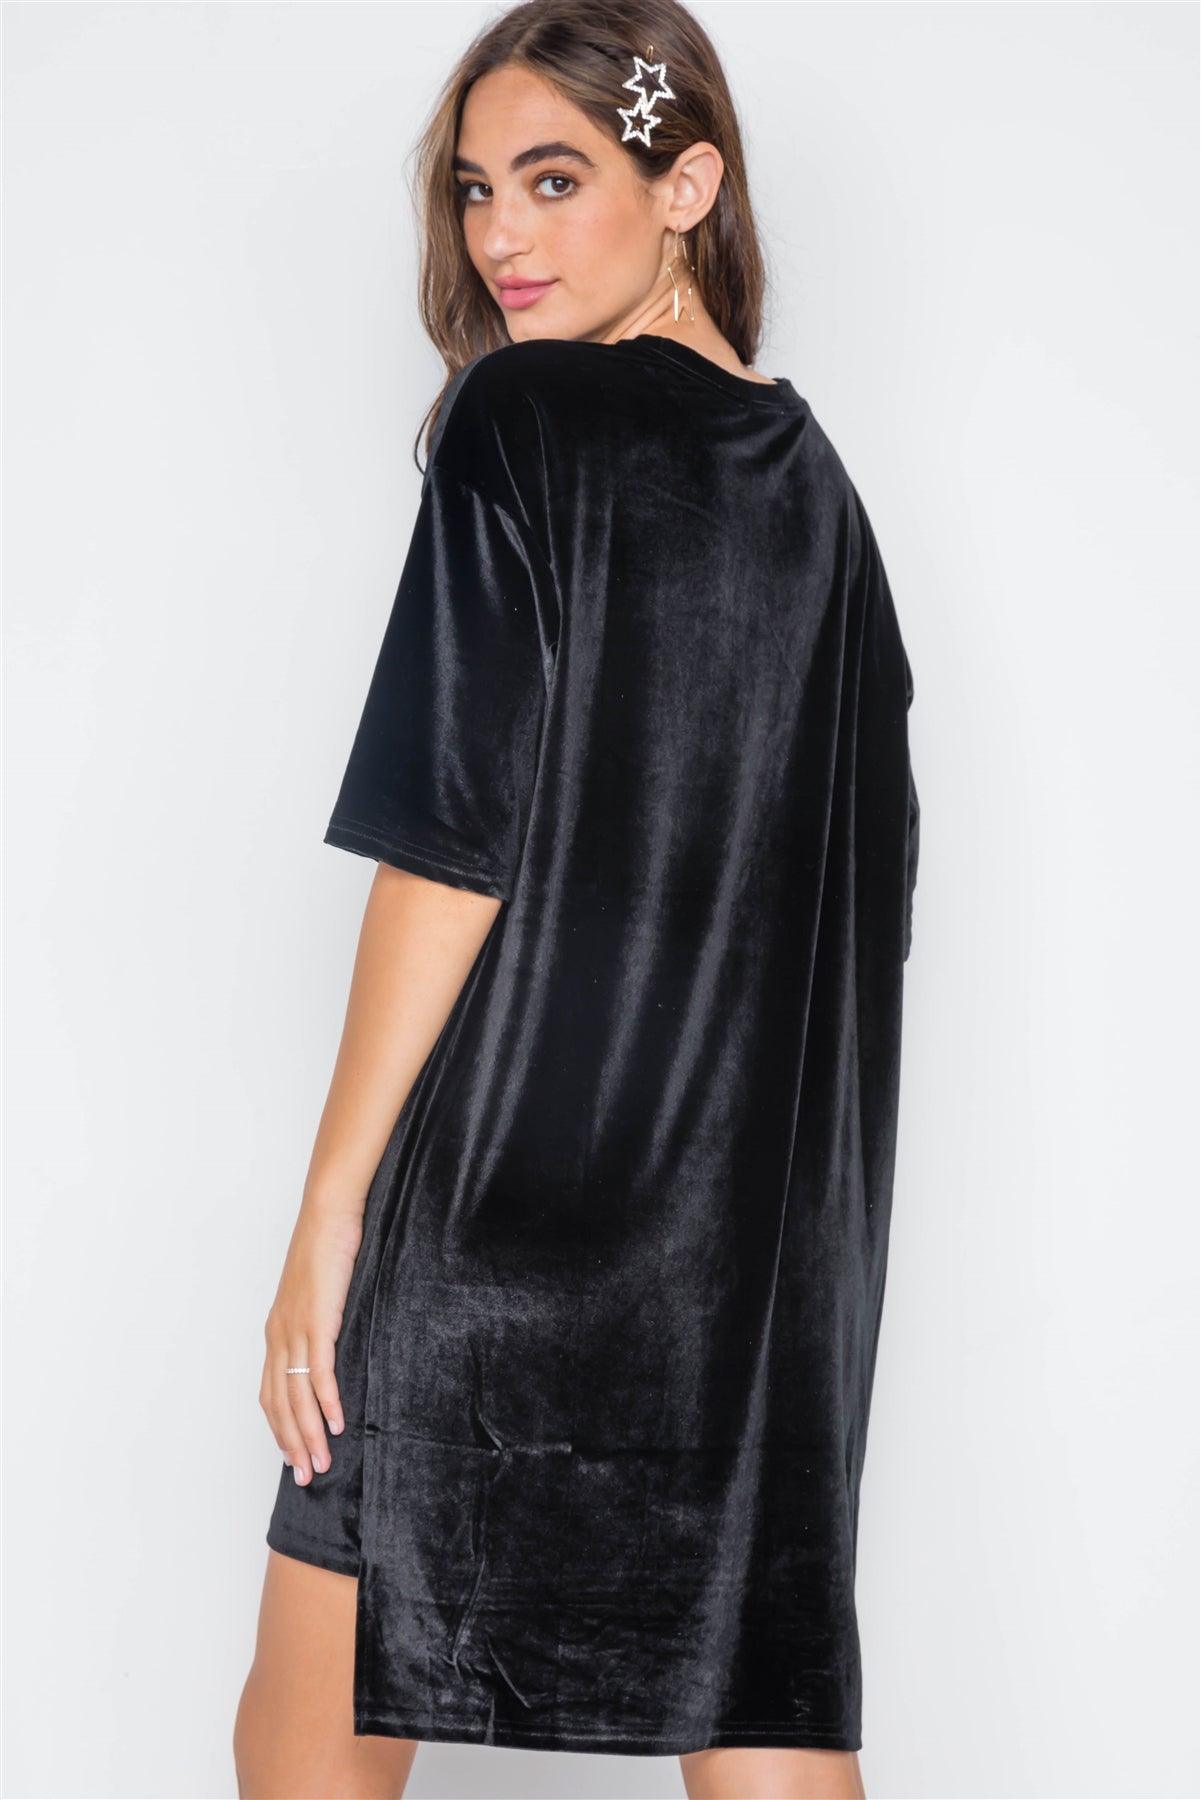 Black Velvet Oversized Short Sleeve Shirt Dress